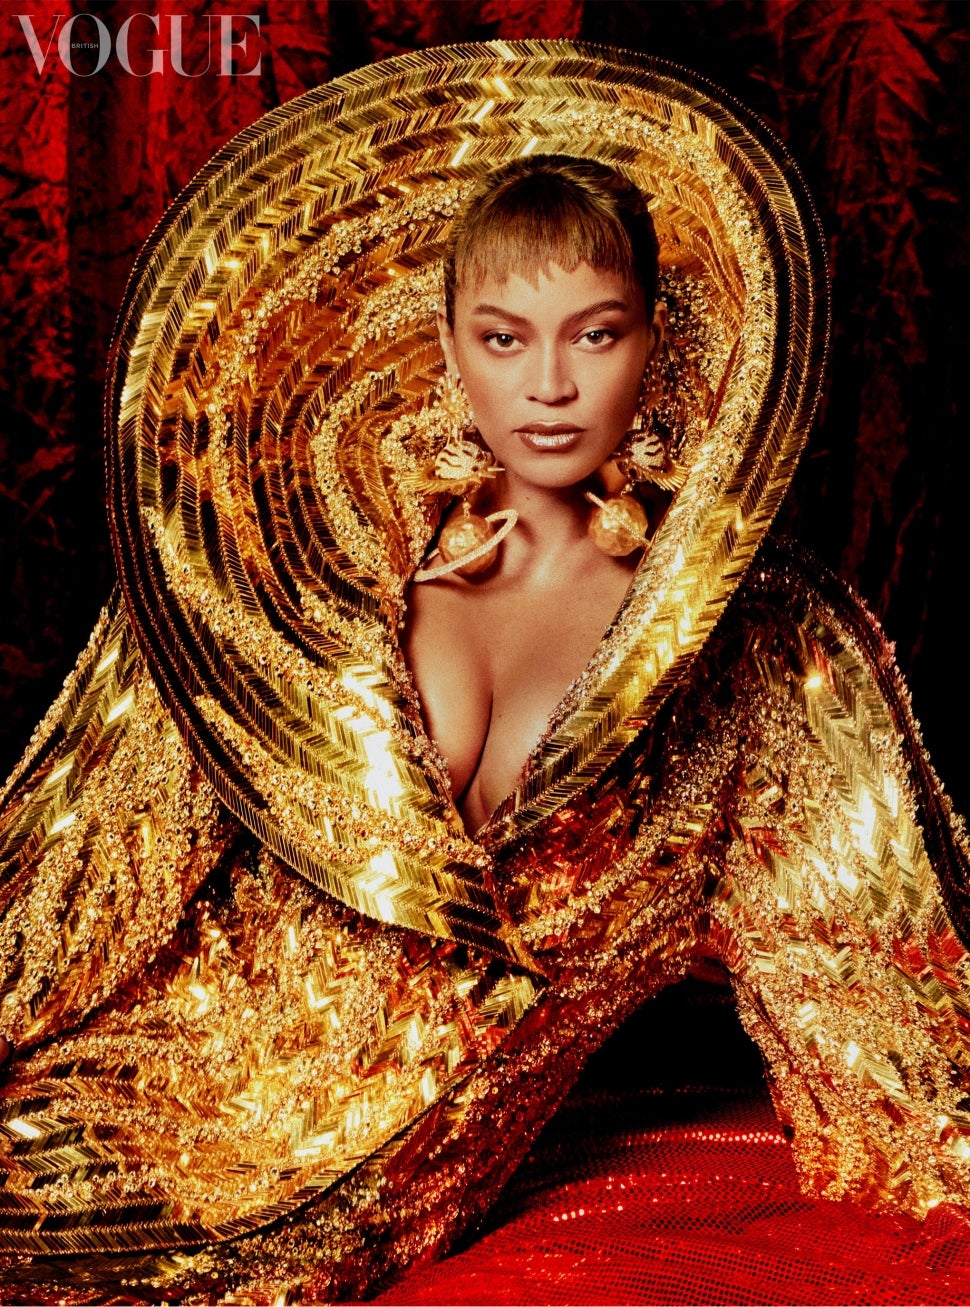 Beyonce British Vogue